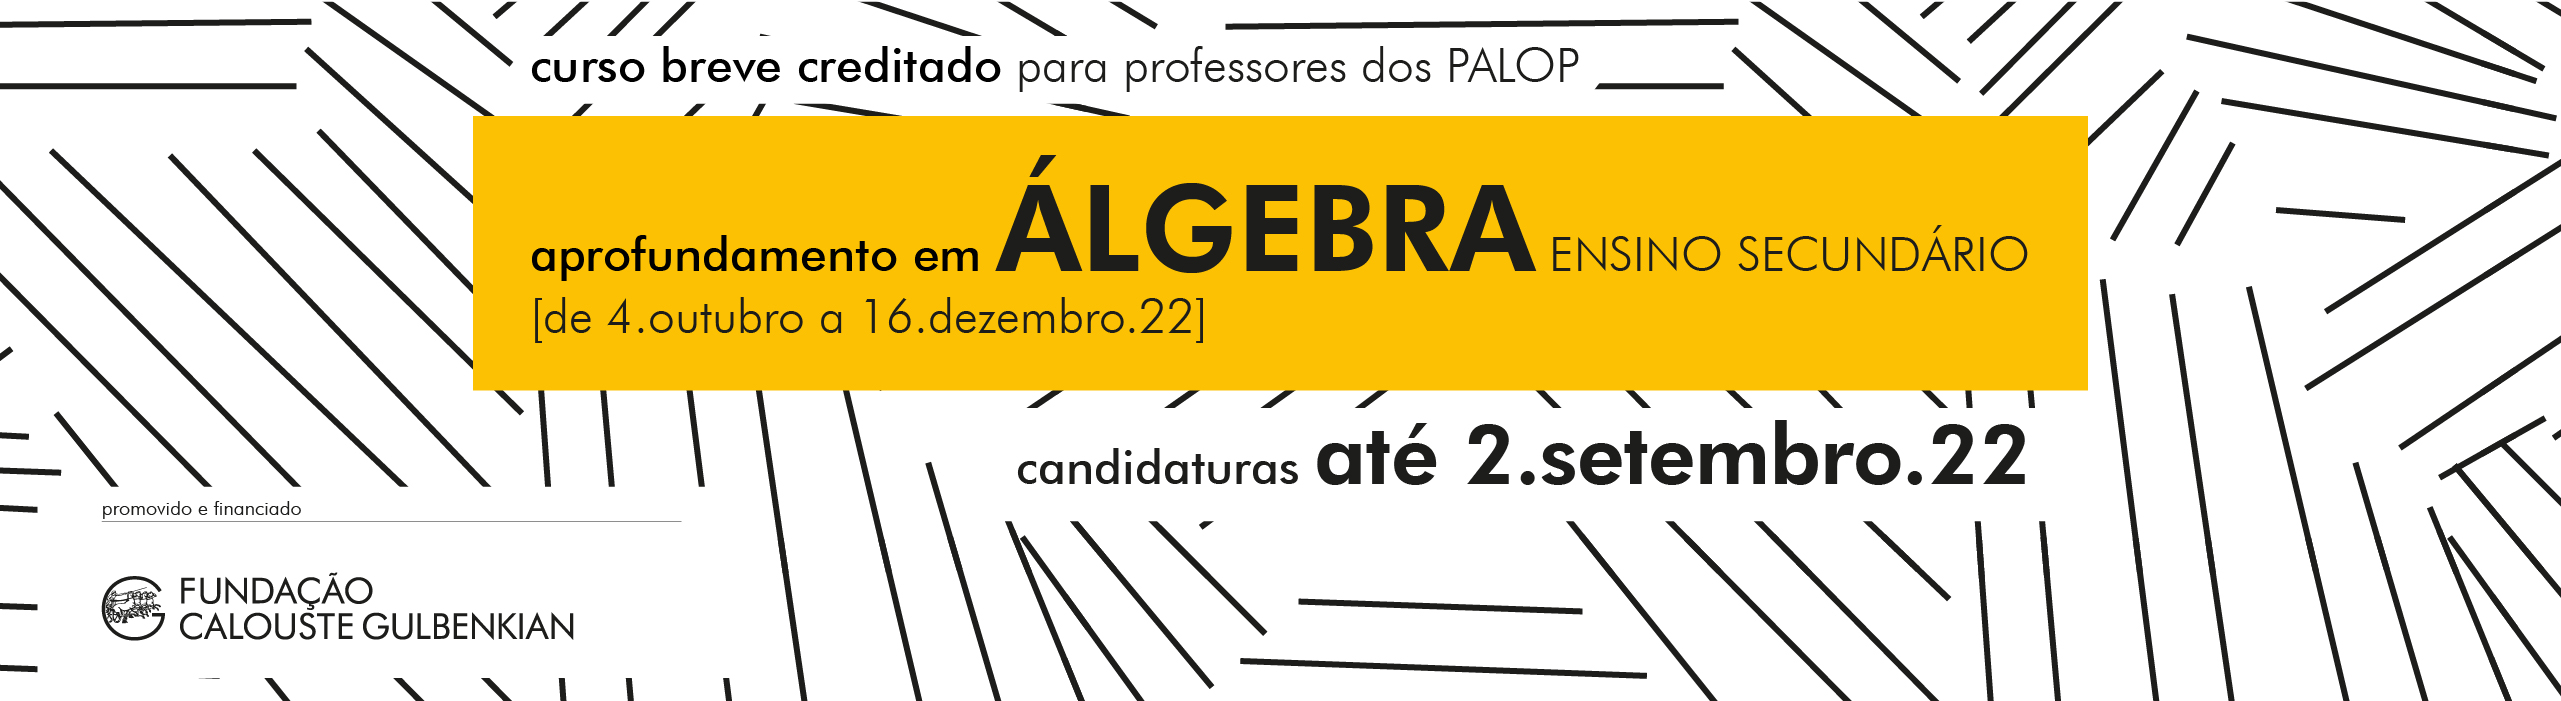 banner portal UMinho_FCG_matemática_4.jpg